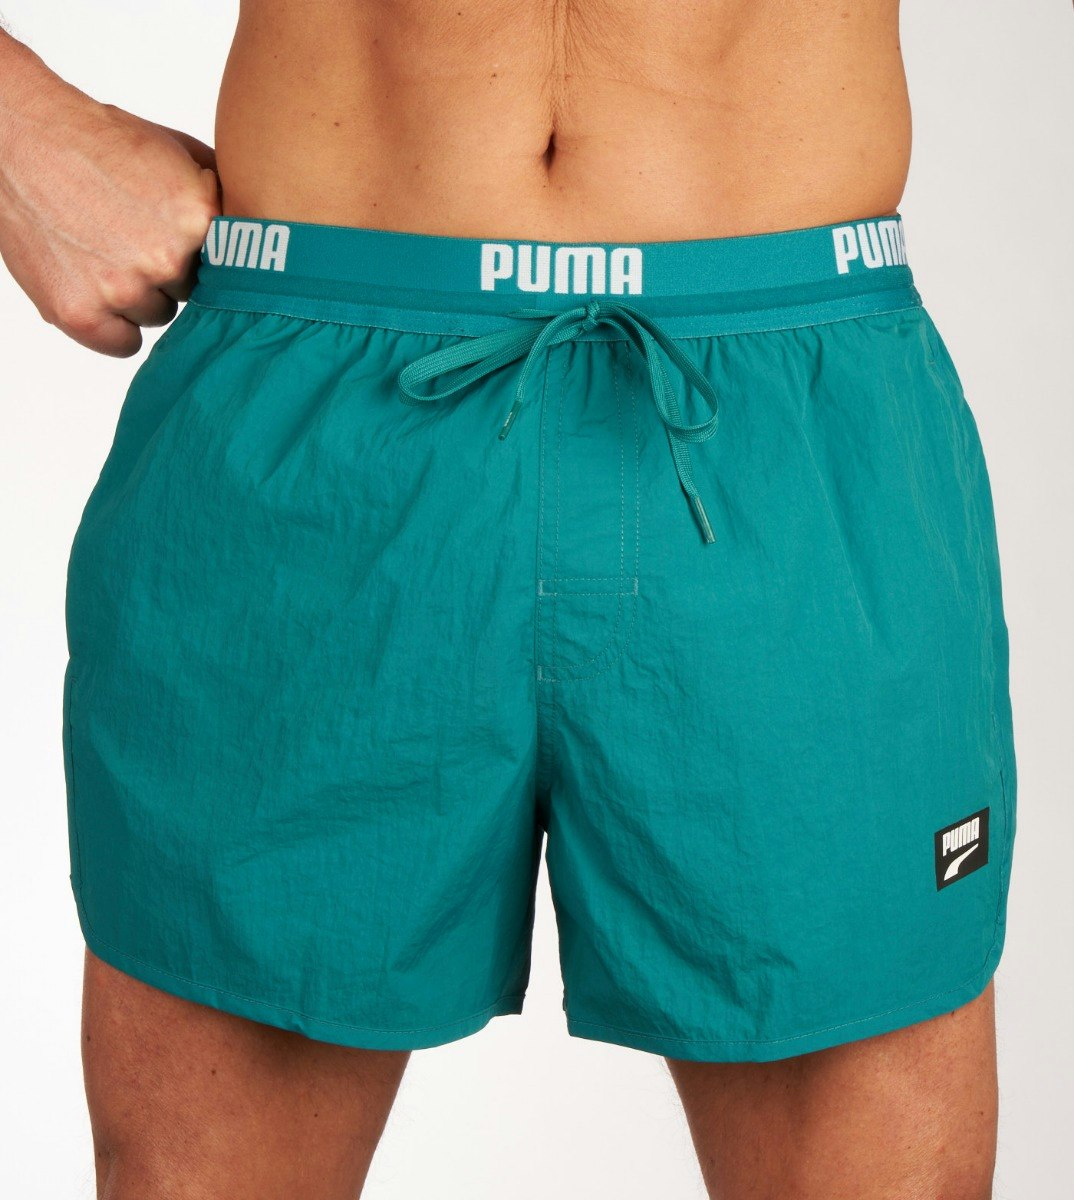 Marque maillot bain Slips & Shorts de Bain pour Homme chez PUMA